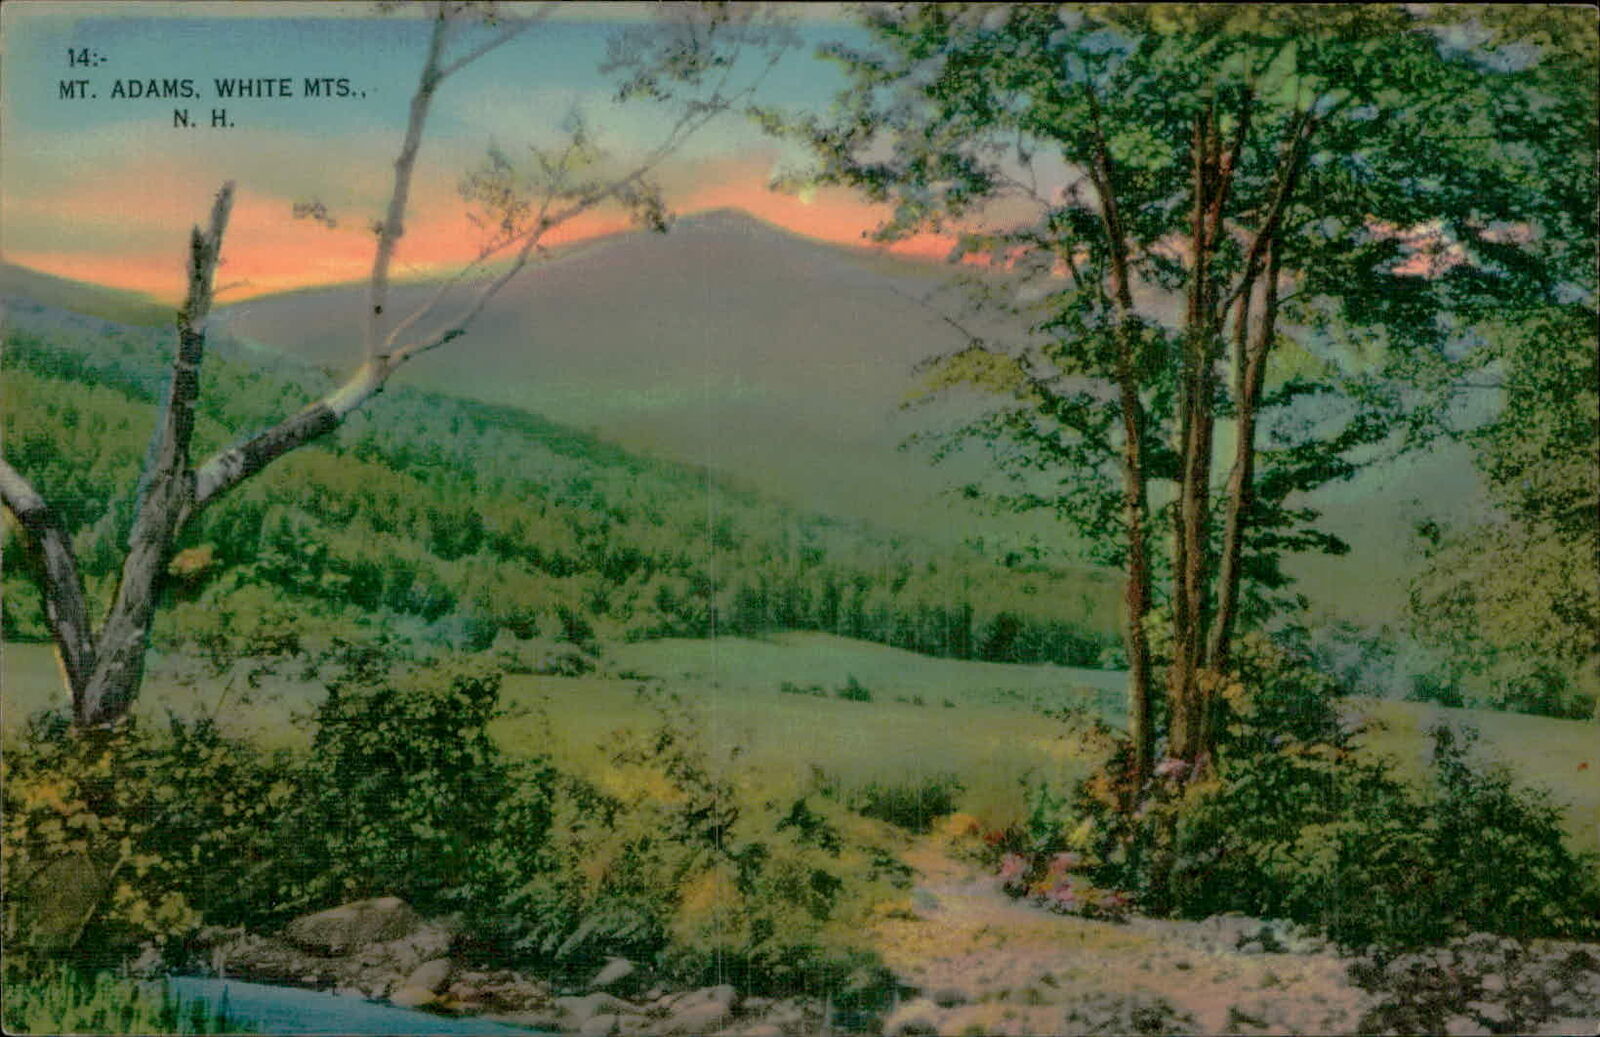 Postcard: 14:- MT. ADAMS, WHITE MTS., N. H.